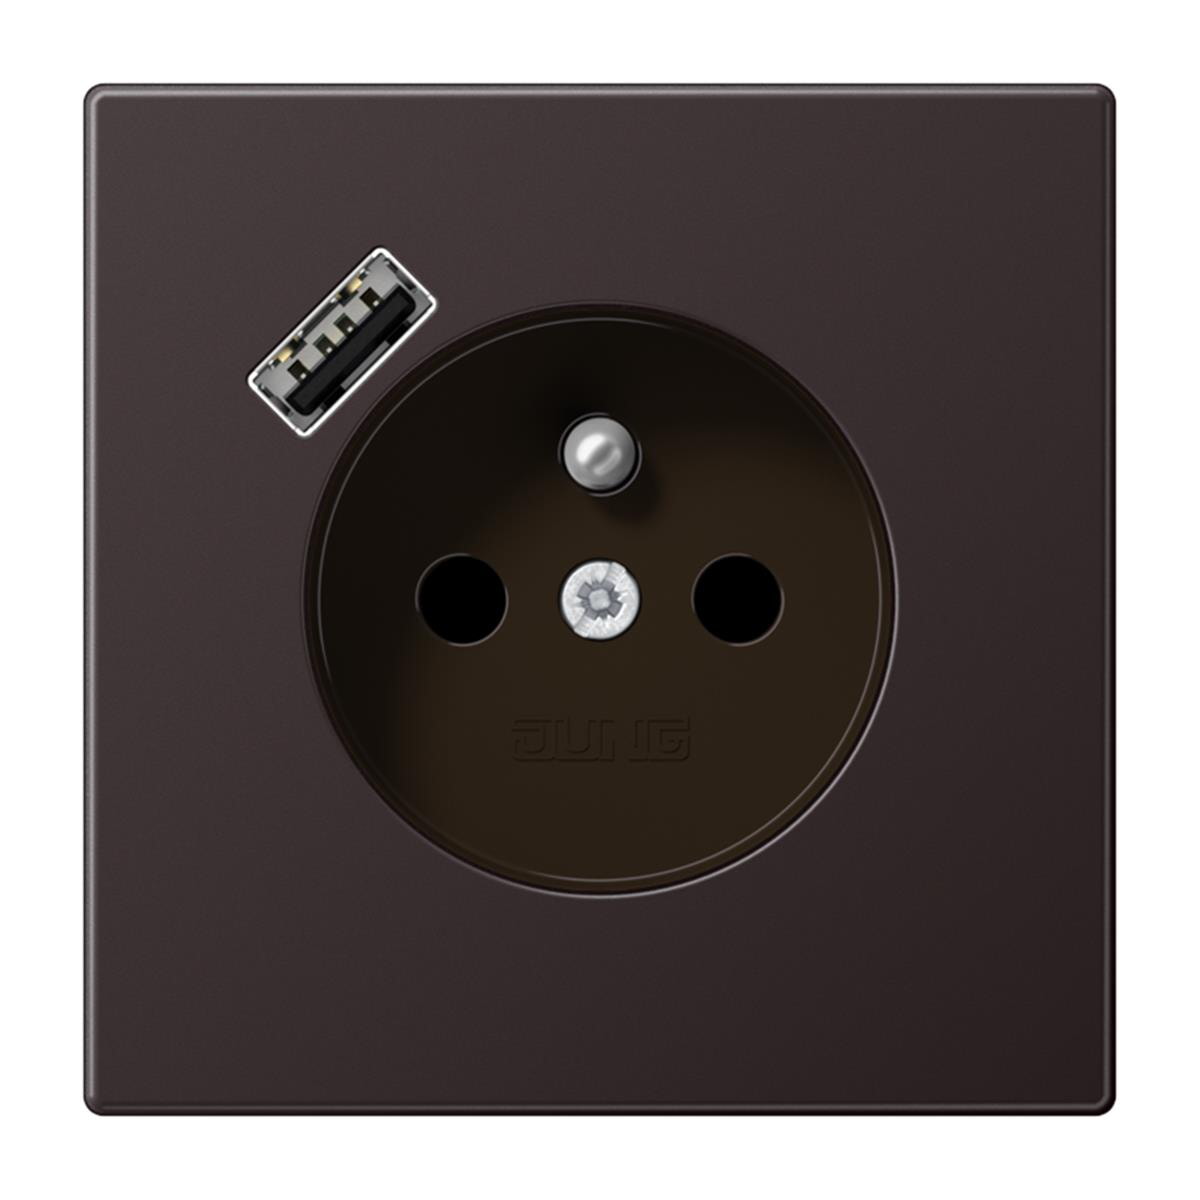 Jung Steckdose, französisch/belgisches System 16 A 250 V ~, mit USB-Ladegerät 1 x Typ A, SAFETY+, Serie LS, dark (l AL1520F-18AD